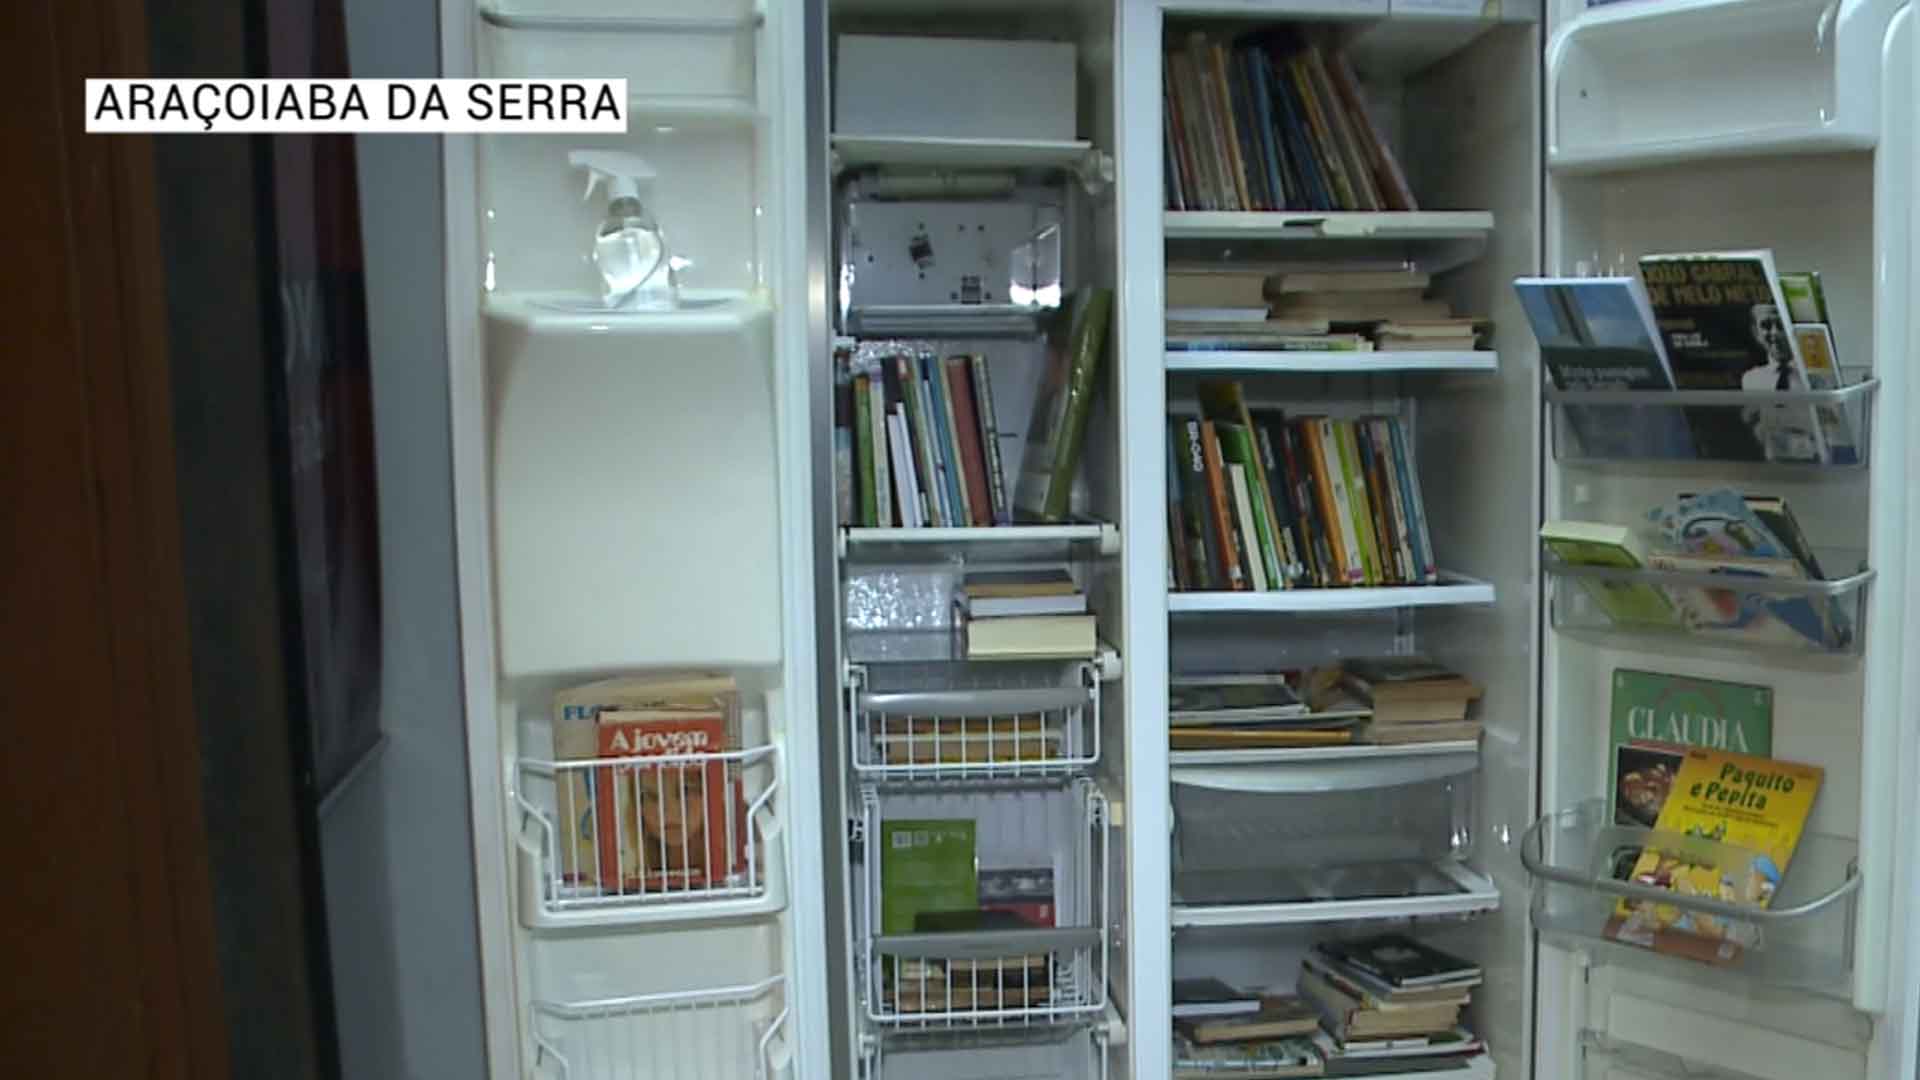 Geladeiras viram bibliotecas em ruas de Araçoiaba da Serra